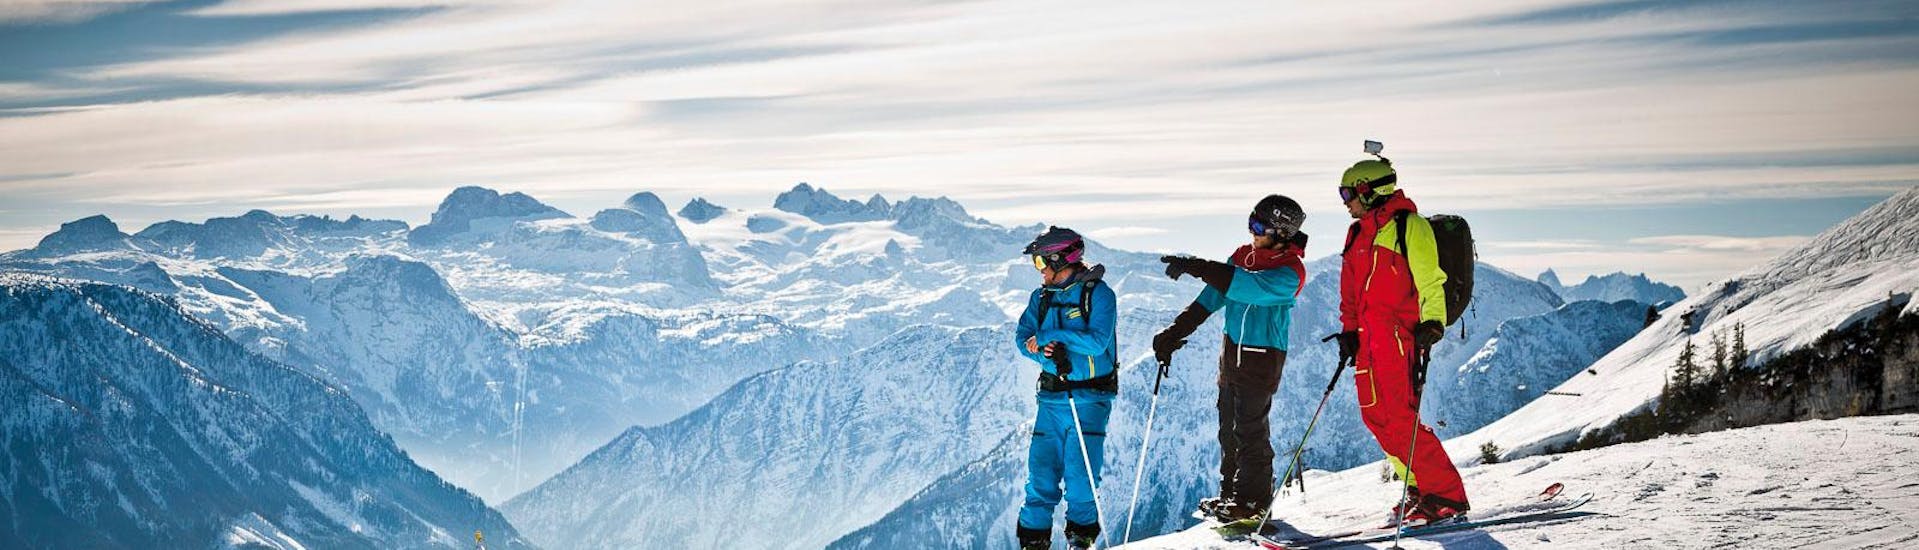 Clases de esquí privadas para adultos para todos los niveles con Snow & Mountain Sports Loitzl Loser.